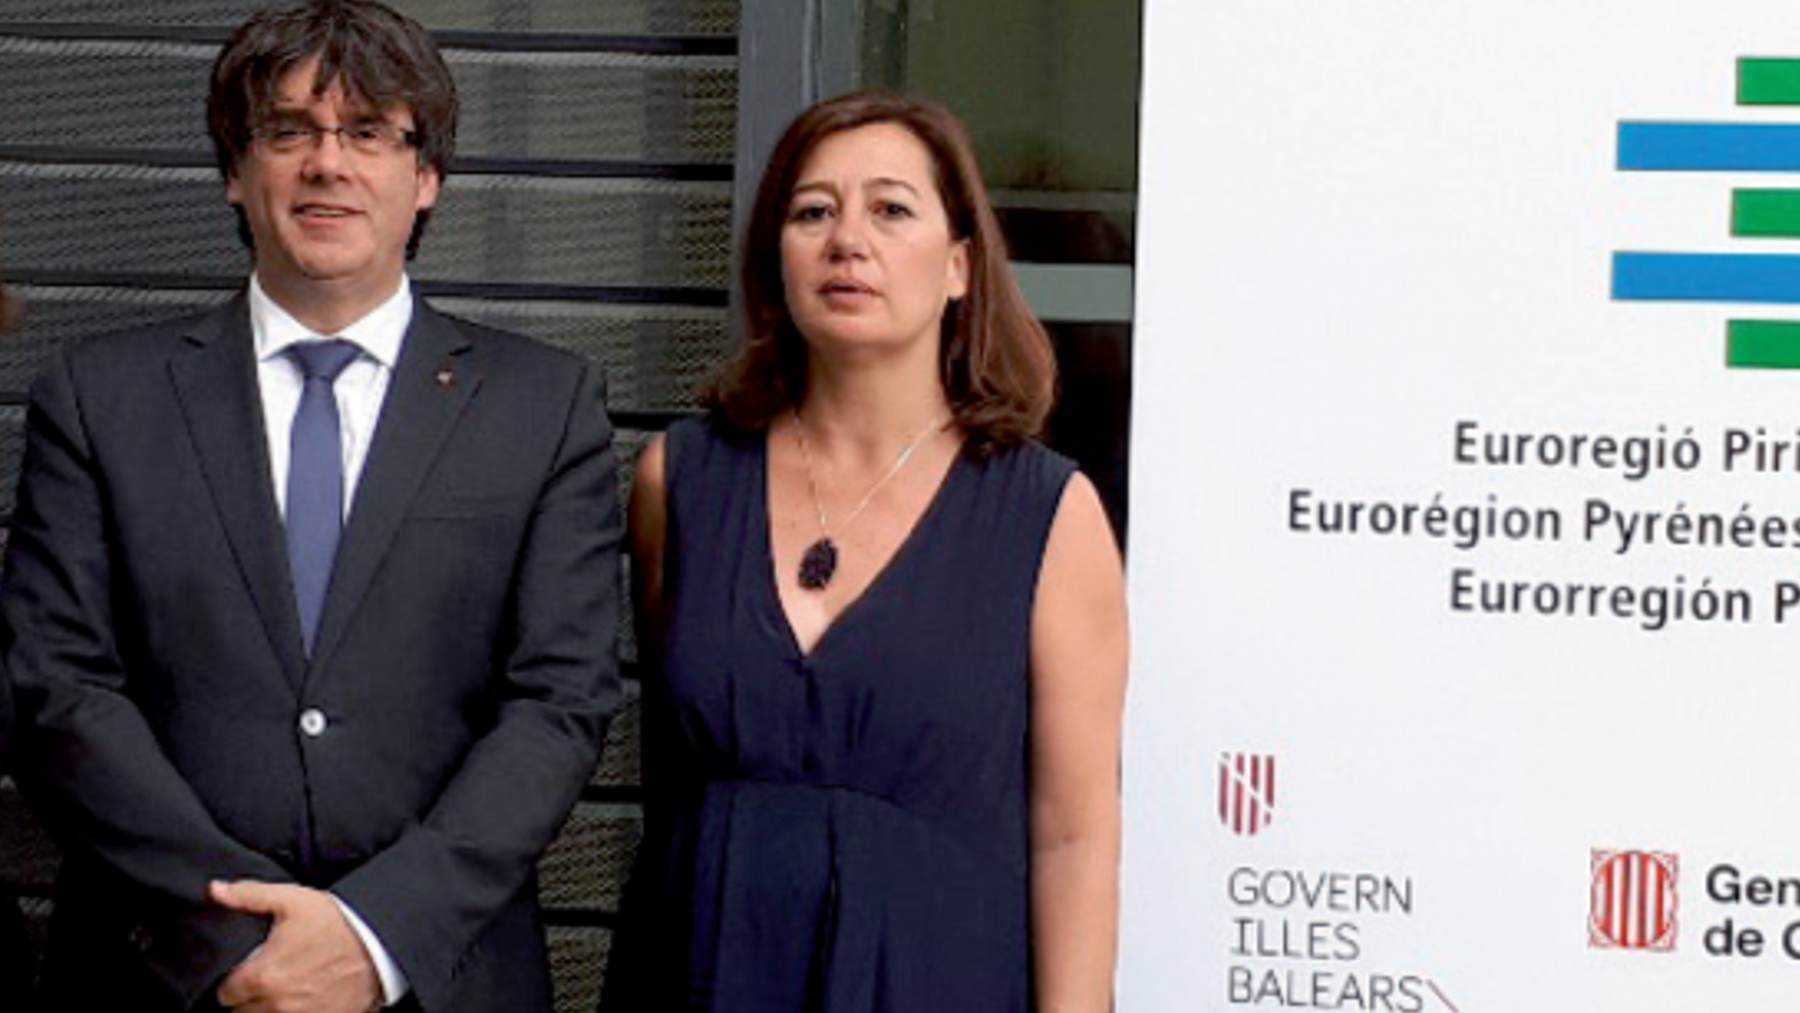 La presidenta del Govern en una foto de archivo junto al expresident fugado de la Generalitat, Carles Puigdemont.